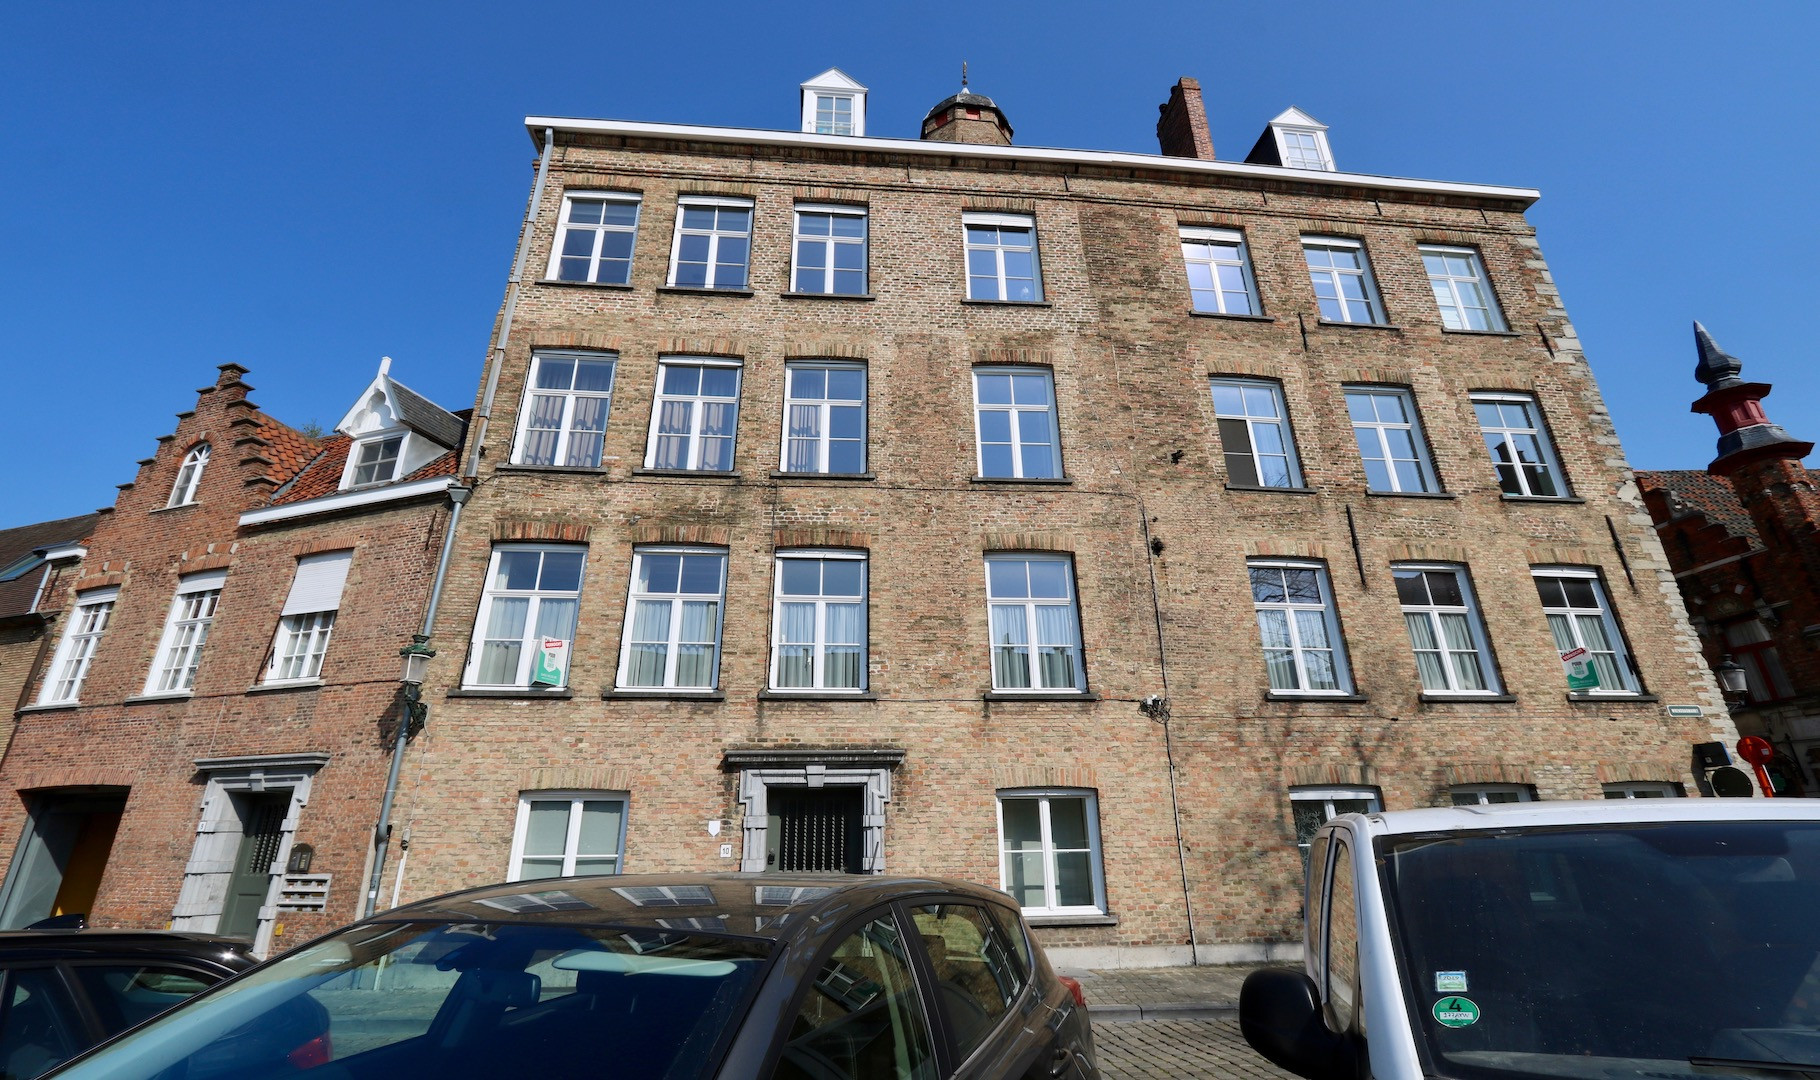 Stijlvol gemeubeld appartement hartje Brugge met autostandplaats - minimum huurtermijn 3 maanden - 1400 €/mnd + 50 € Internet + 50 € autostandplaats